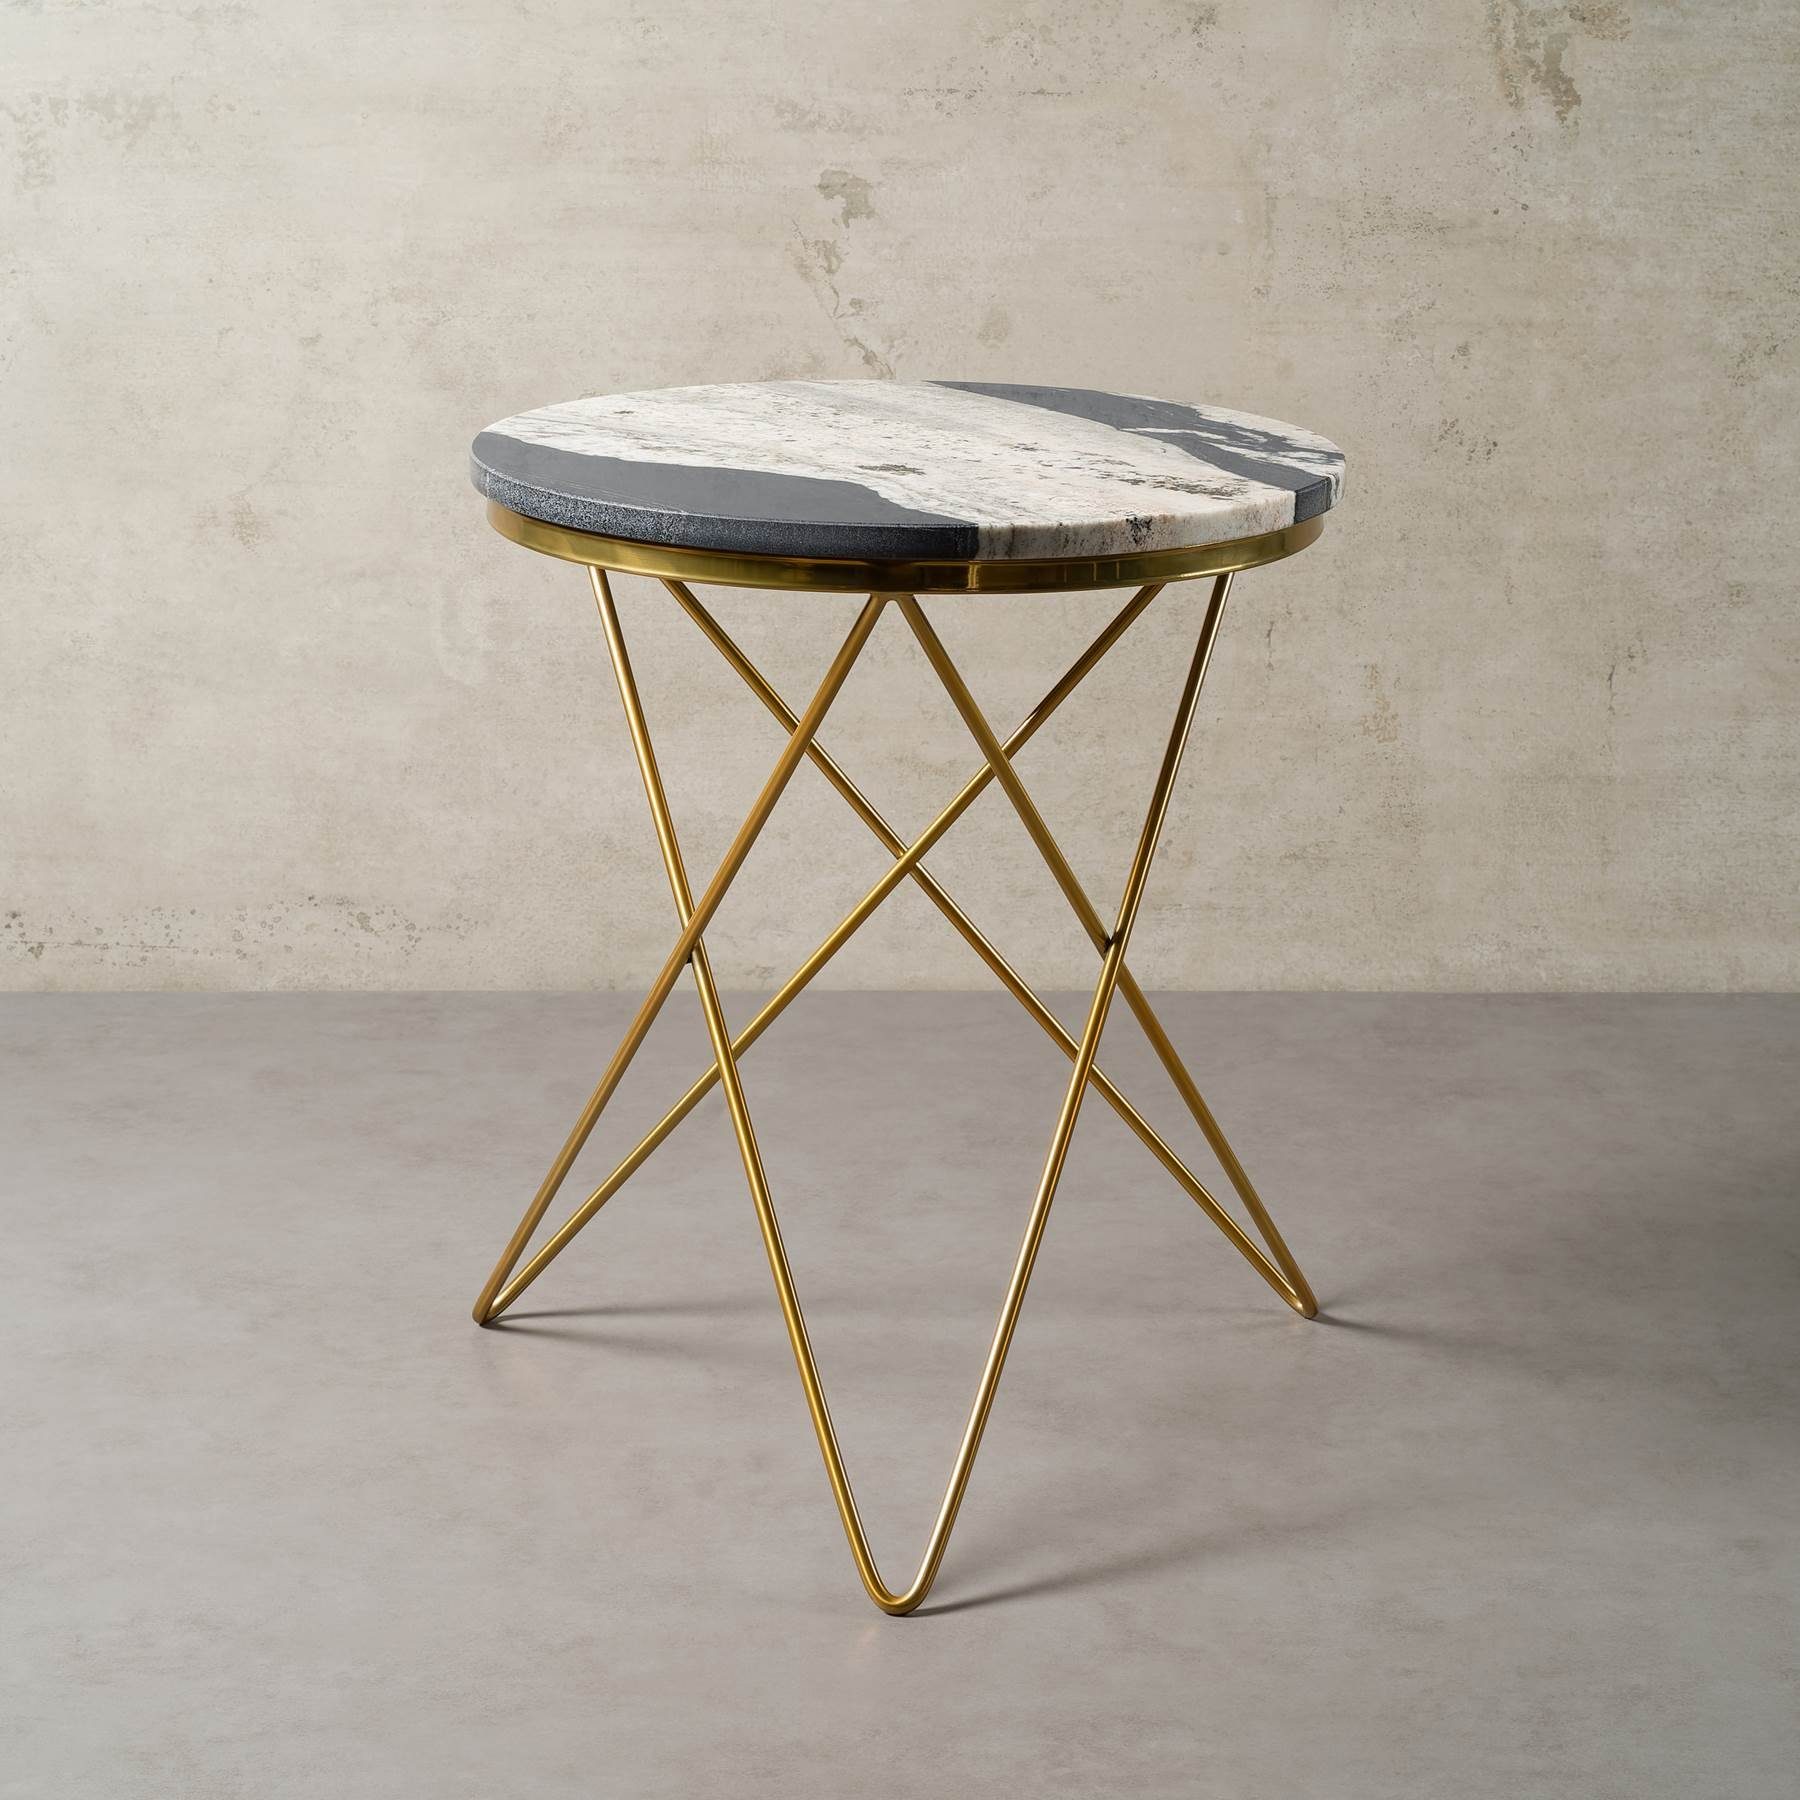 MAGNA Atelier Beistelltisch PARIS mit ECHTEM MARMOR, Beistelltisch rund, gold Metallgestell, Ø52x66cm Copacabana